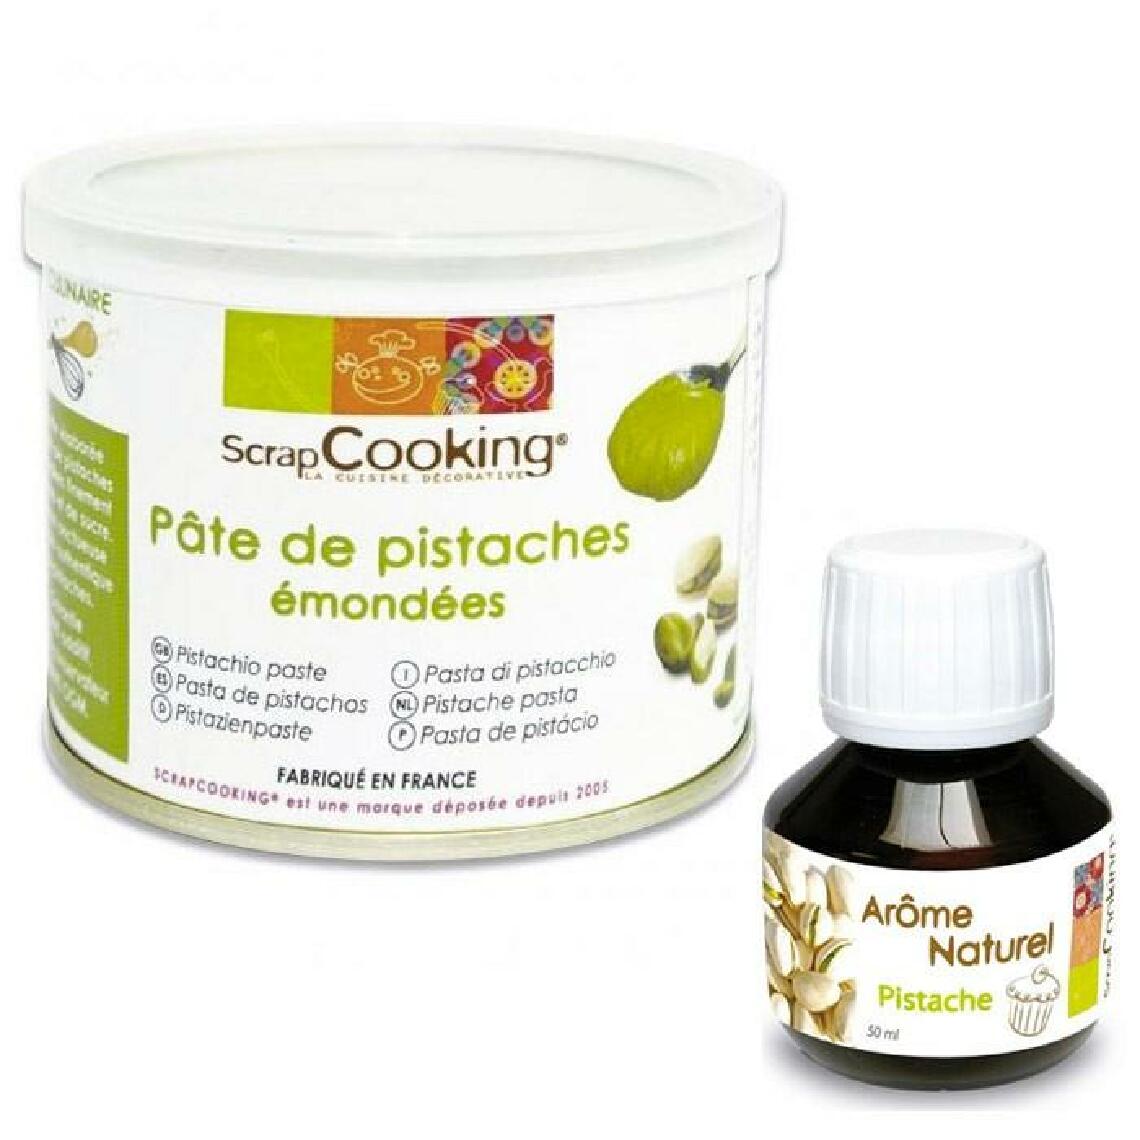 Scrapcooking - Pâte de pistache + arôme pistache - Kits créatifs